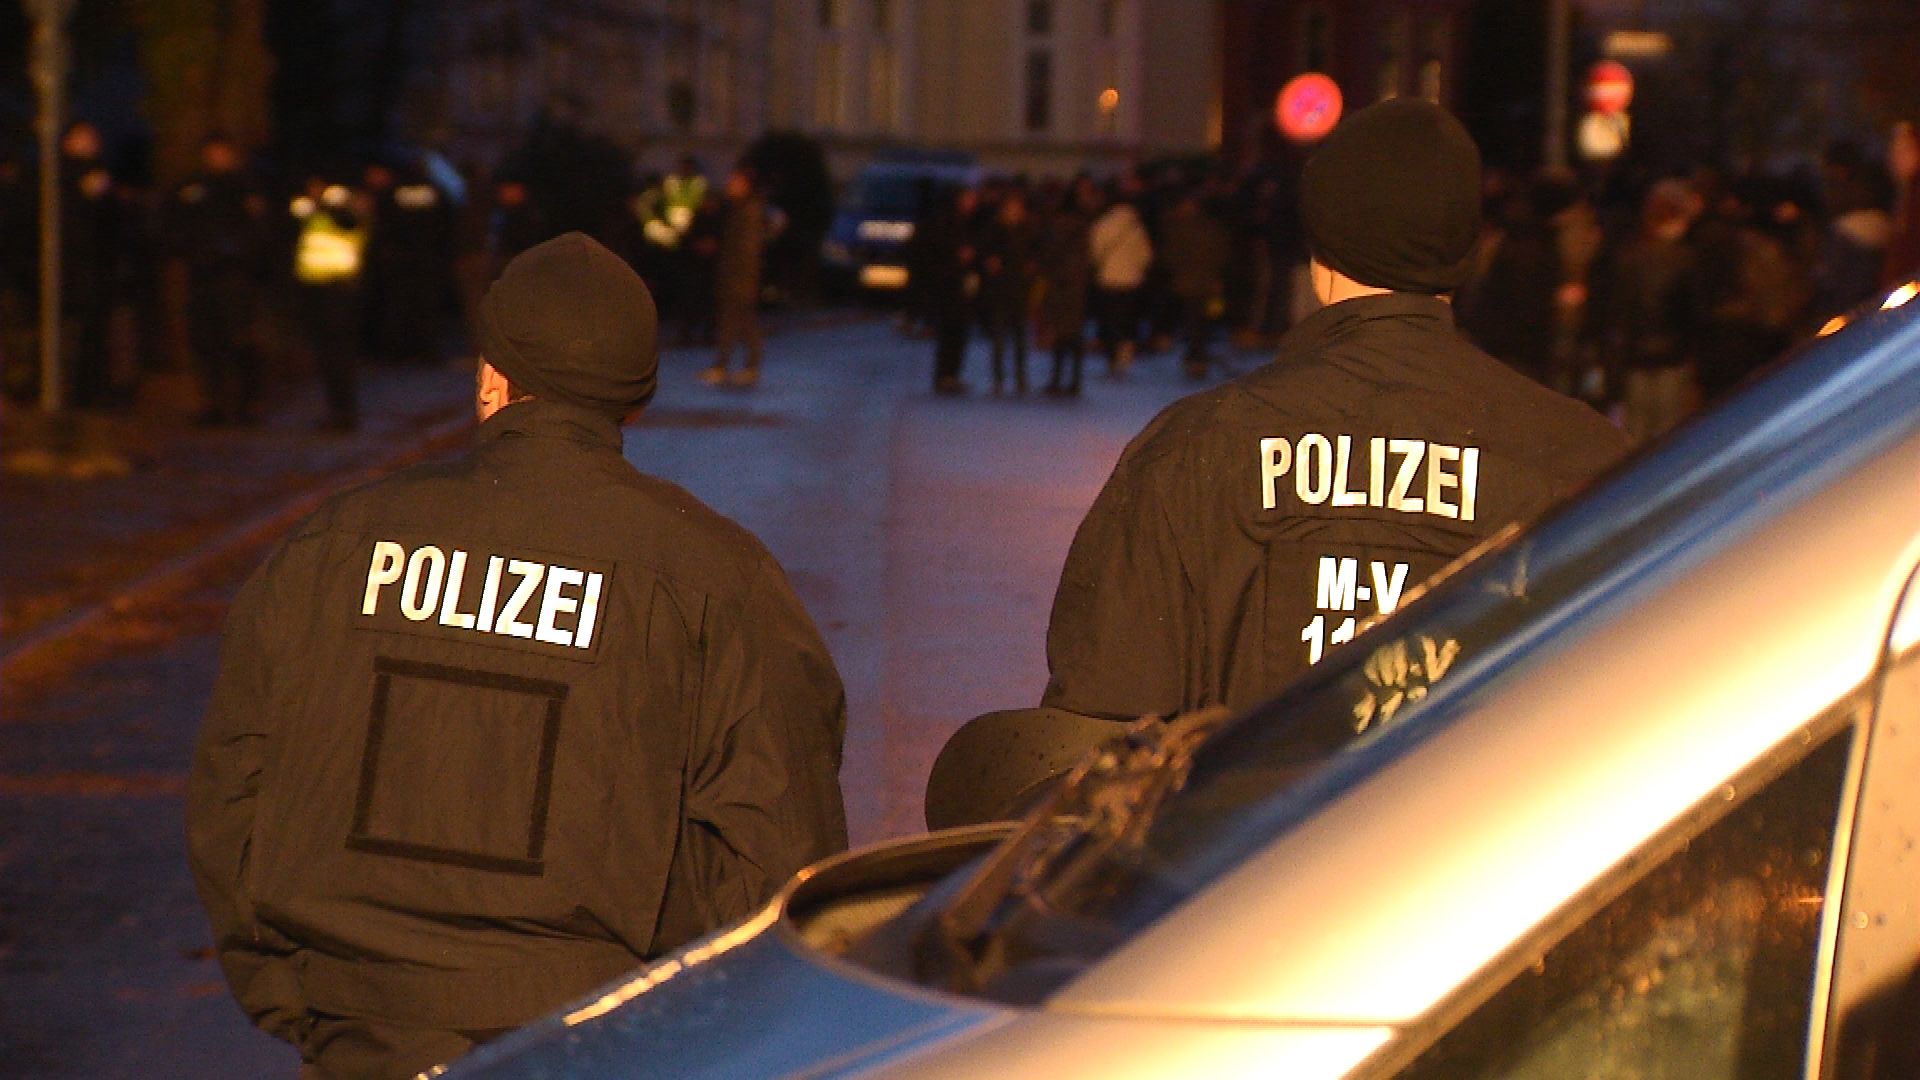 Polizei im Einsatz (Foto: ZDF/Janine Büchner)